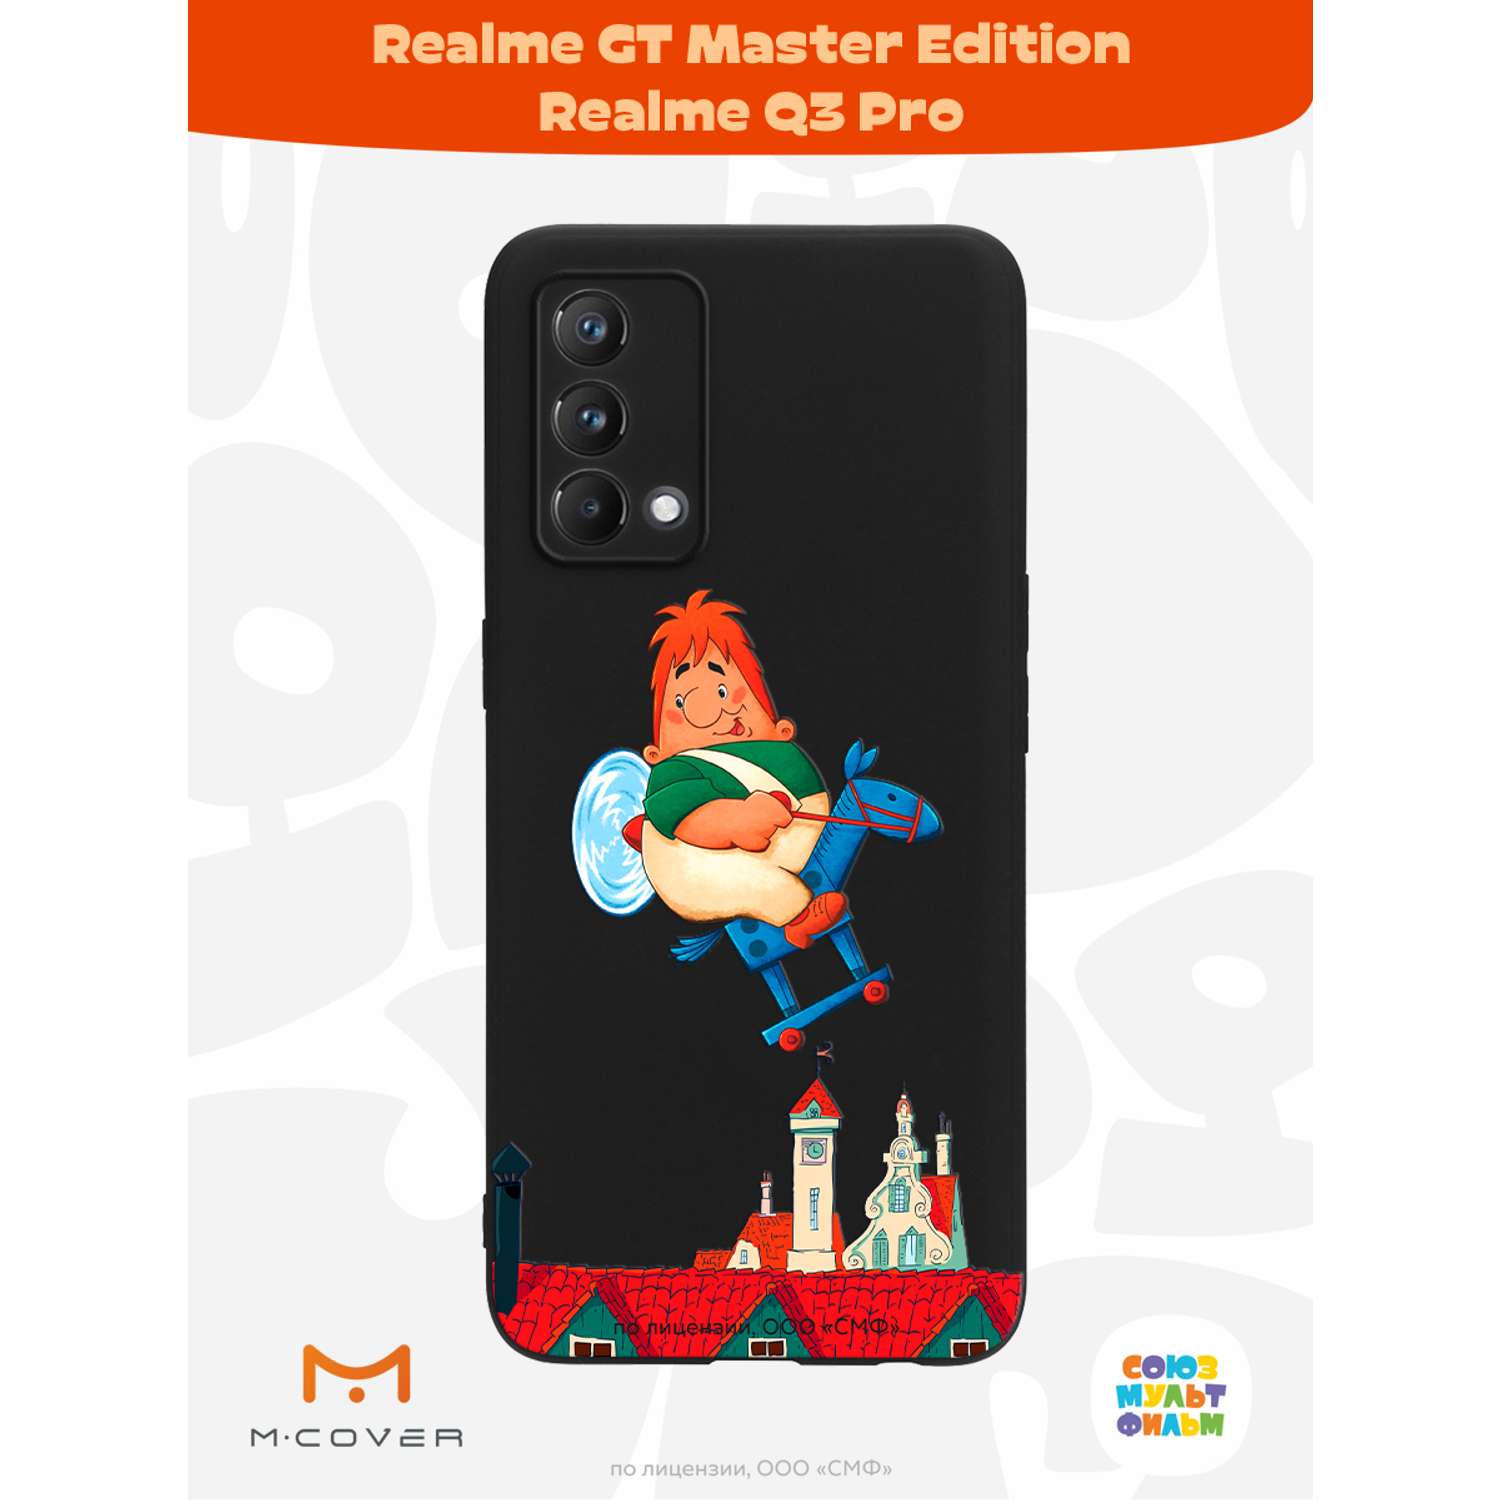 Силиконовый чехол Mcover для смартфона Realme GT Master Edition Q3 Pro Союзмультфильм верхом по небу - фото 2